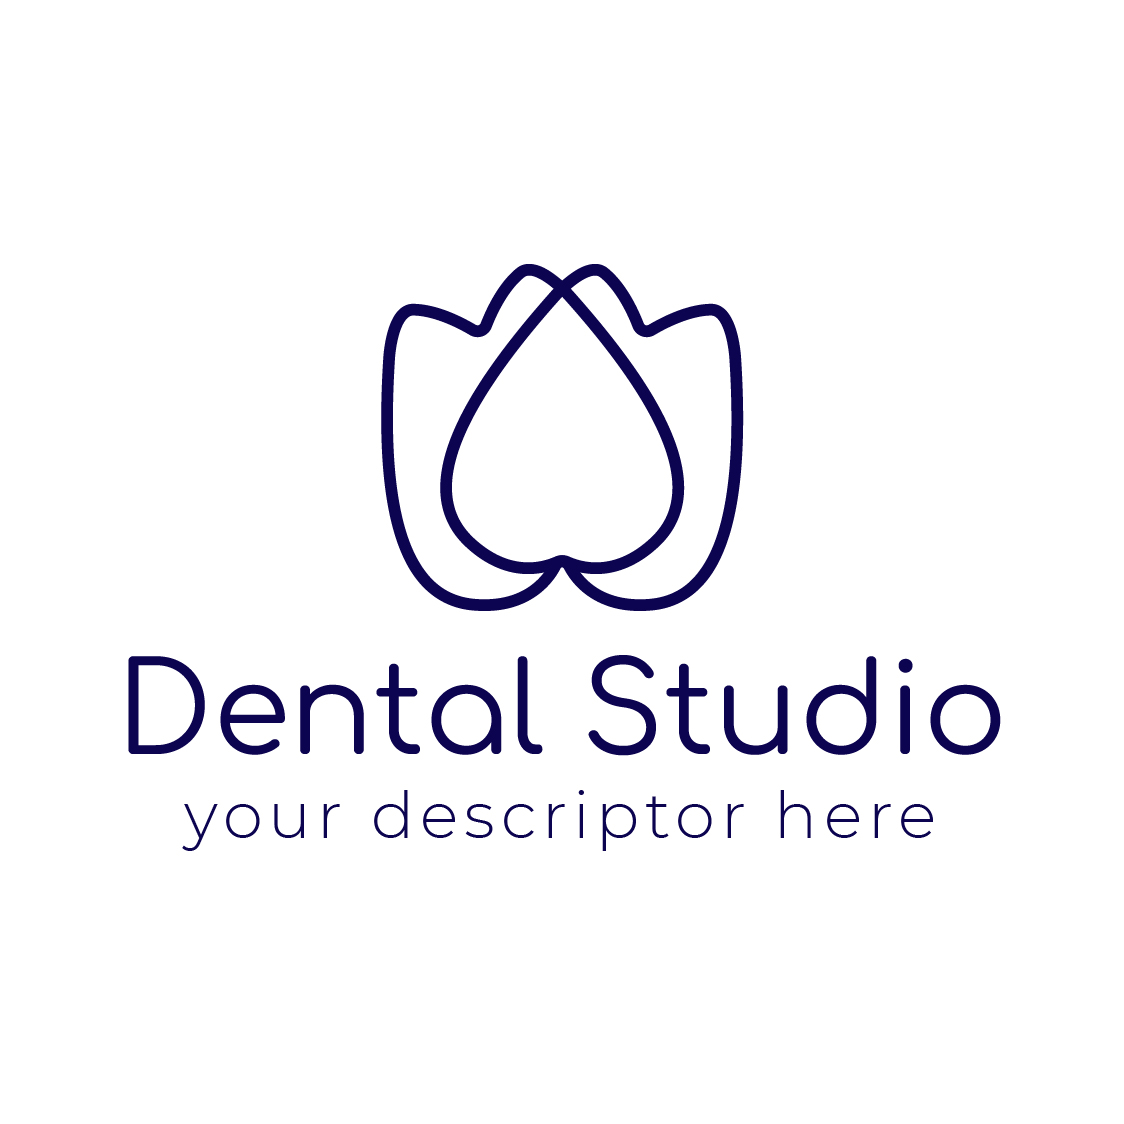 lotus dental logo preview image.